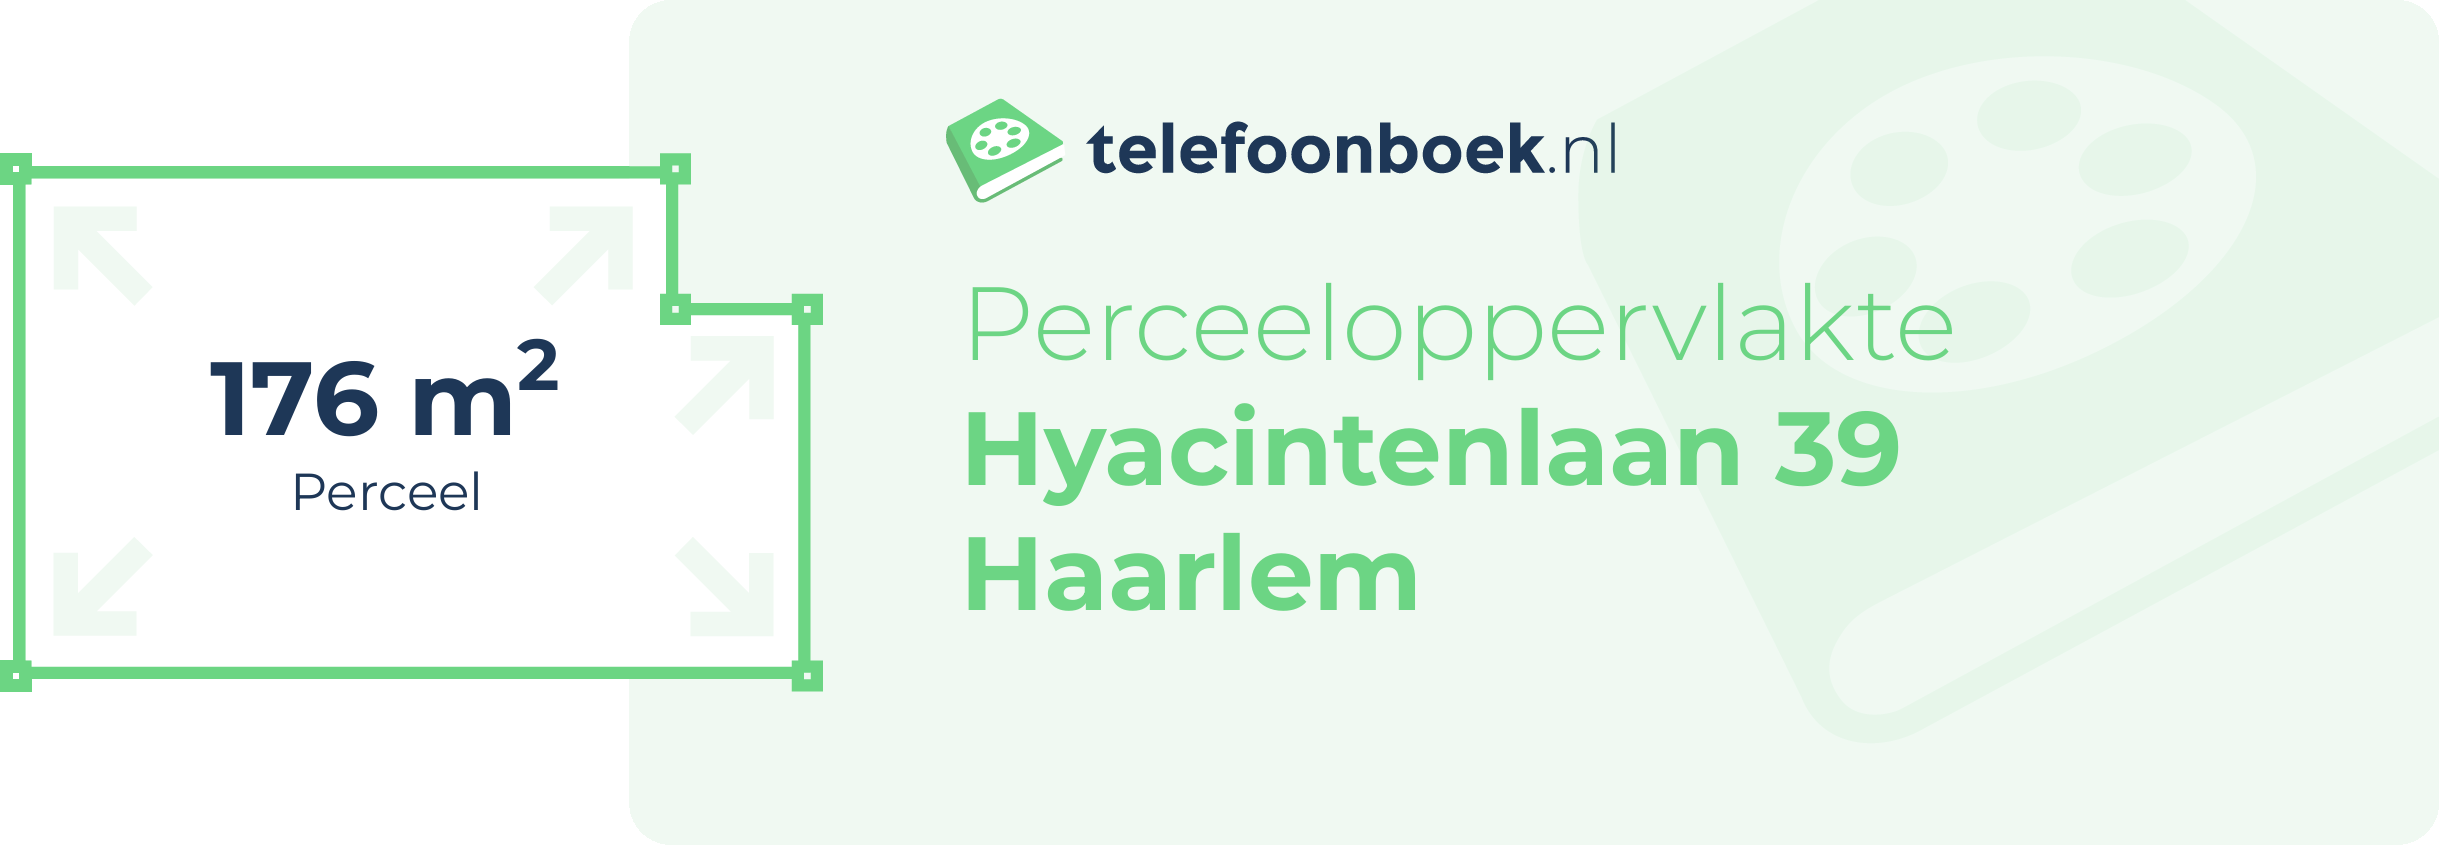 Perceeloppervlakte Hyacintenlaan 39 Haarlem